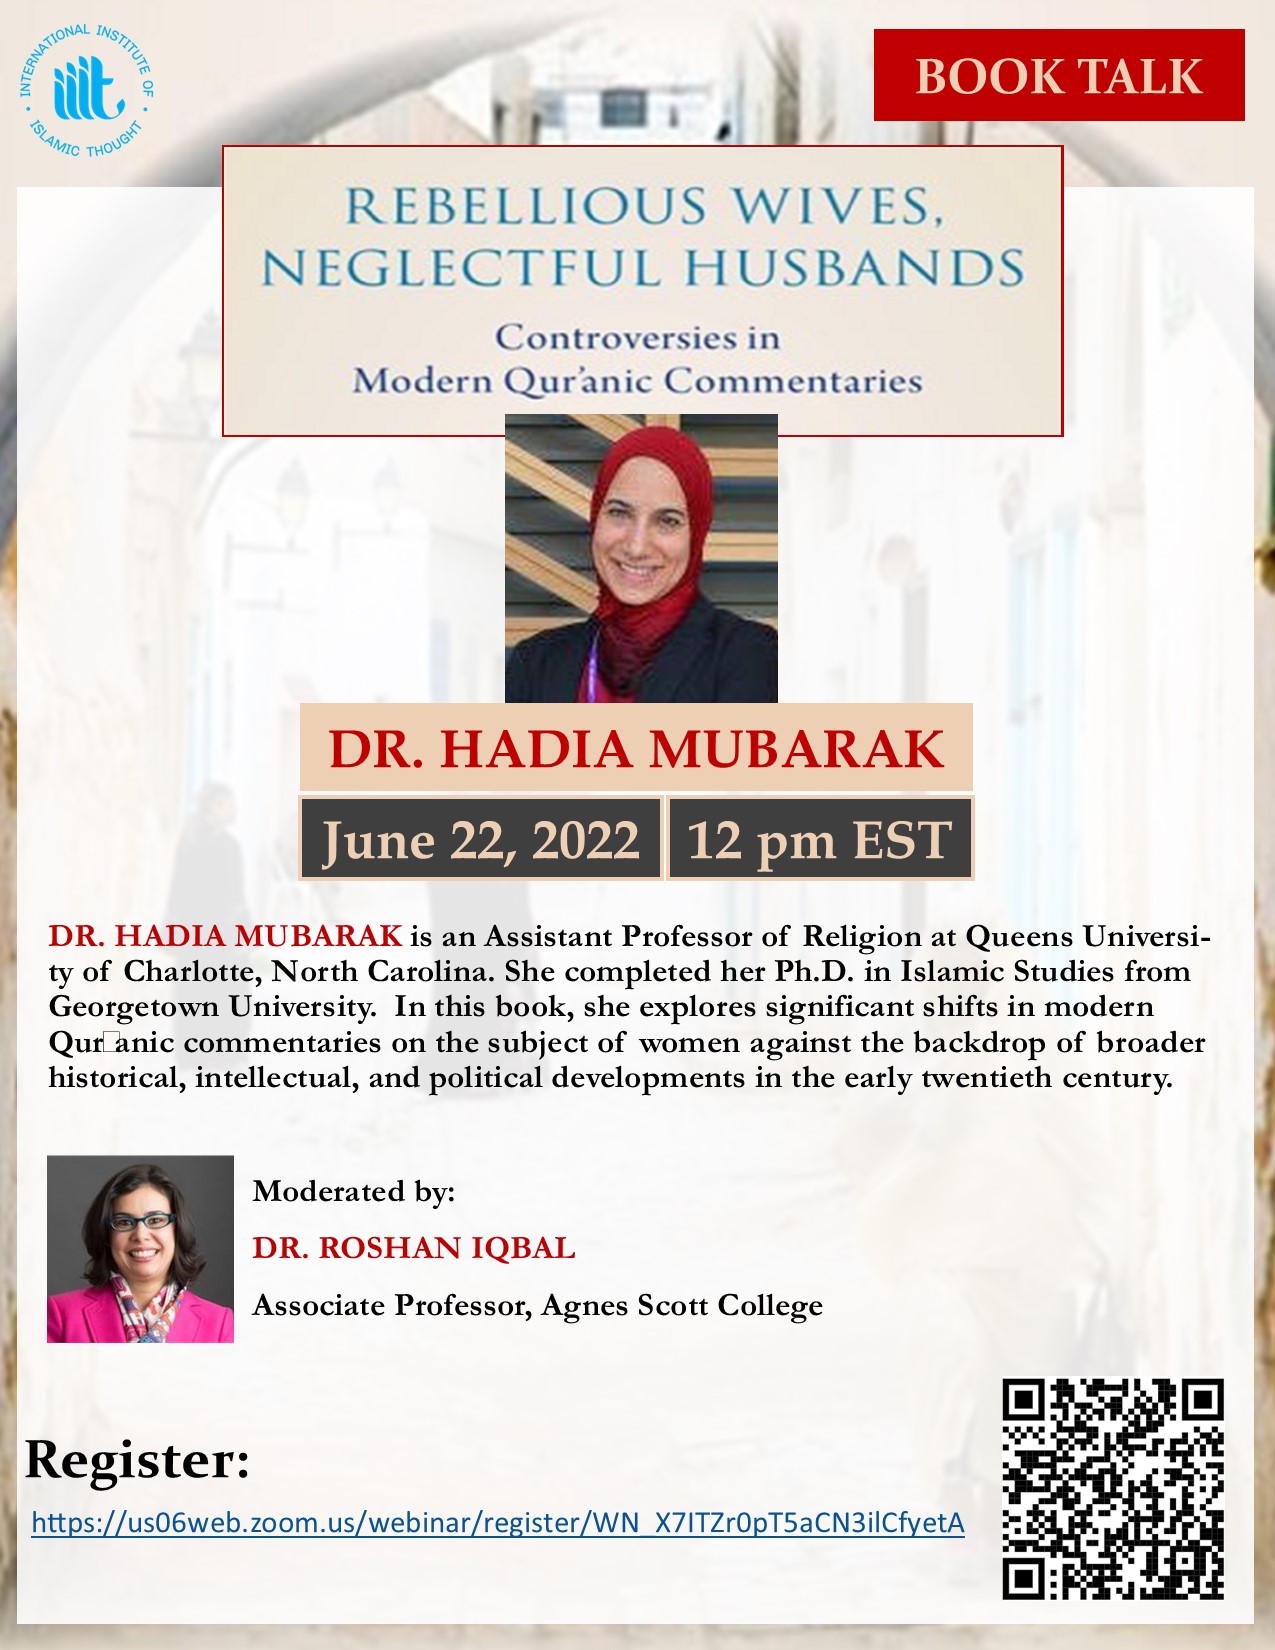 Hadia Mubarak Book Talk: “Rebellious Wives, Neglectful Husbands” By Hadia Mubarak | Moderated By Dr. Roshan Iqbal